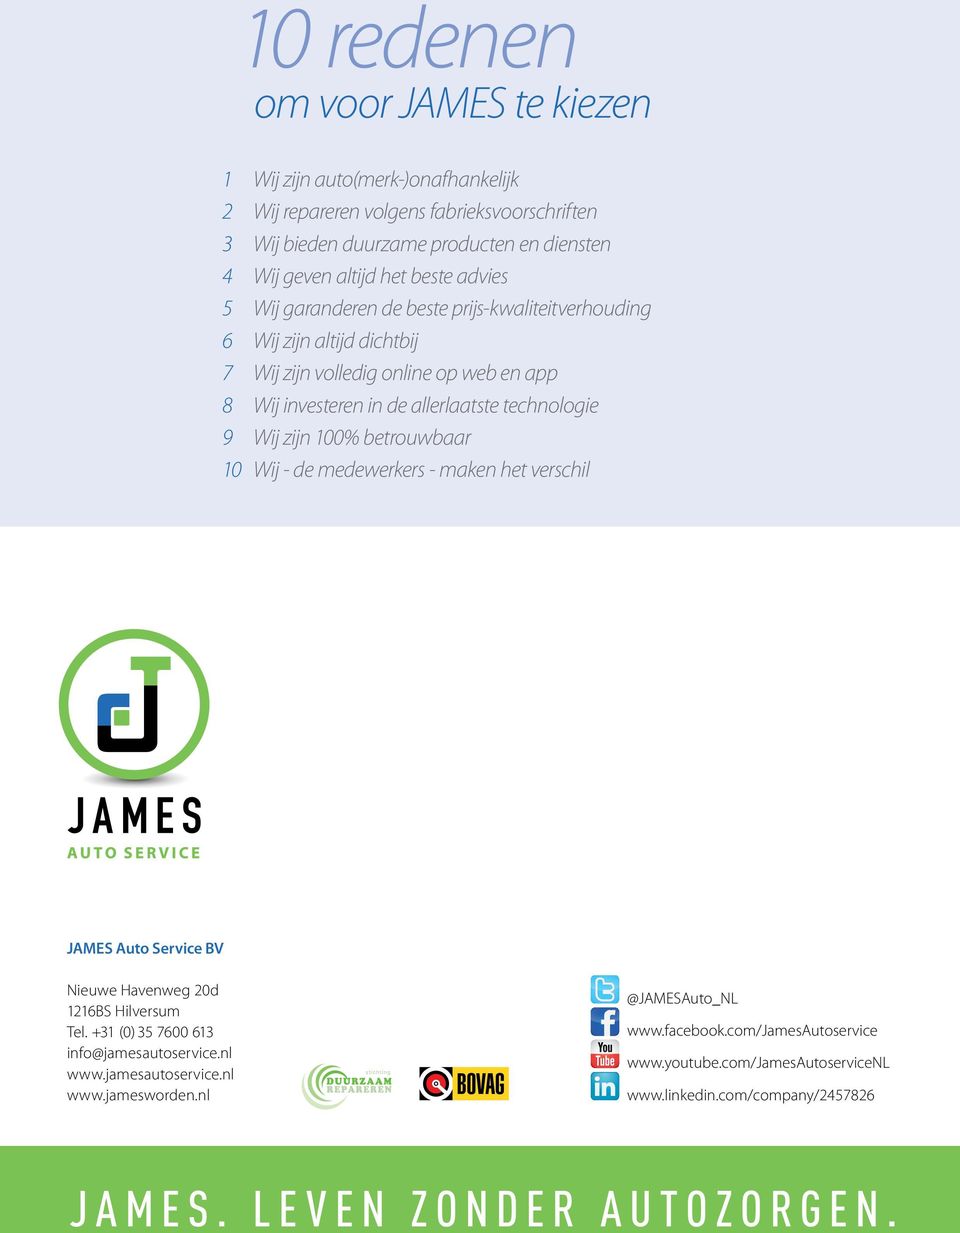 Wij zijn 100% betrouwbaar 10 Wij - de medewerkers - maken het verschil JAMES Auto Service BV Nieuwe Havenweg 20d 1216BS Hilversum Tel. +31 (0) 35 7600 613 info@jamesautoservice.nl www.